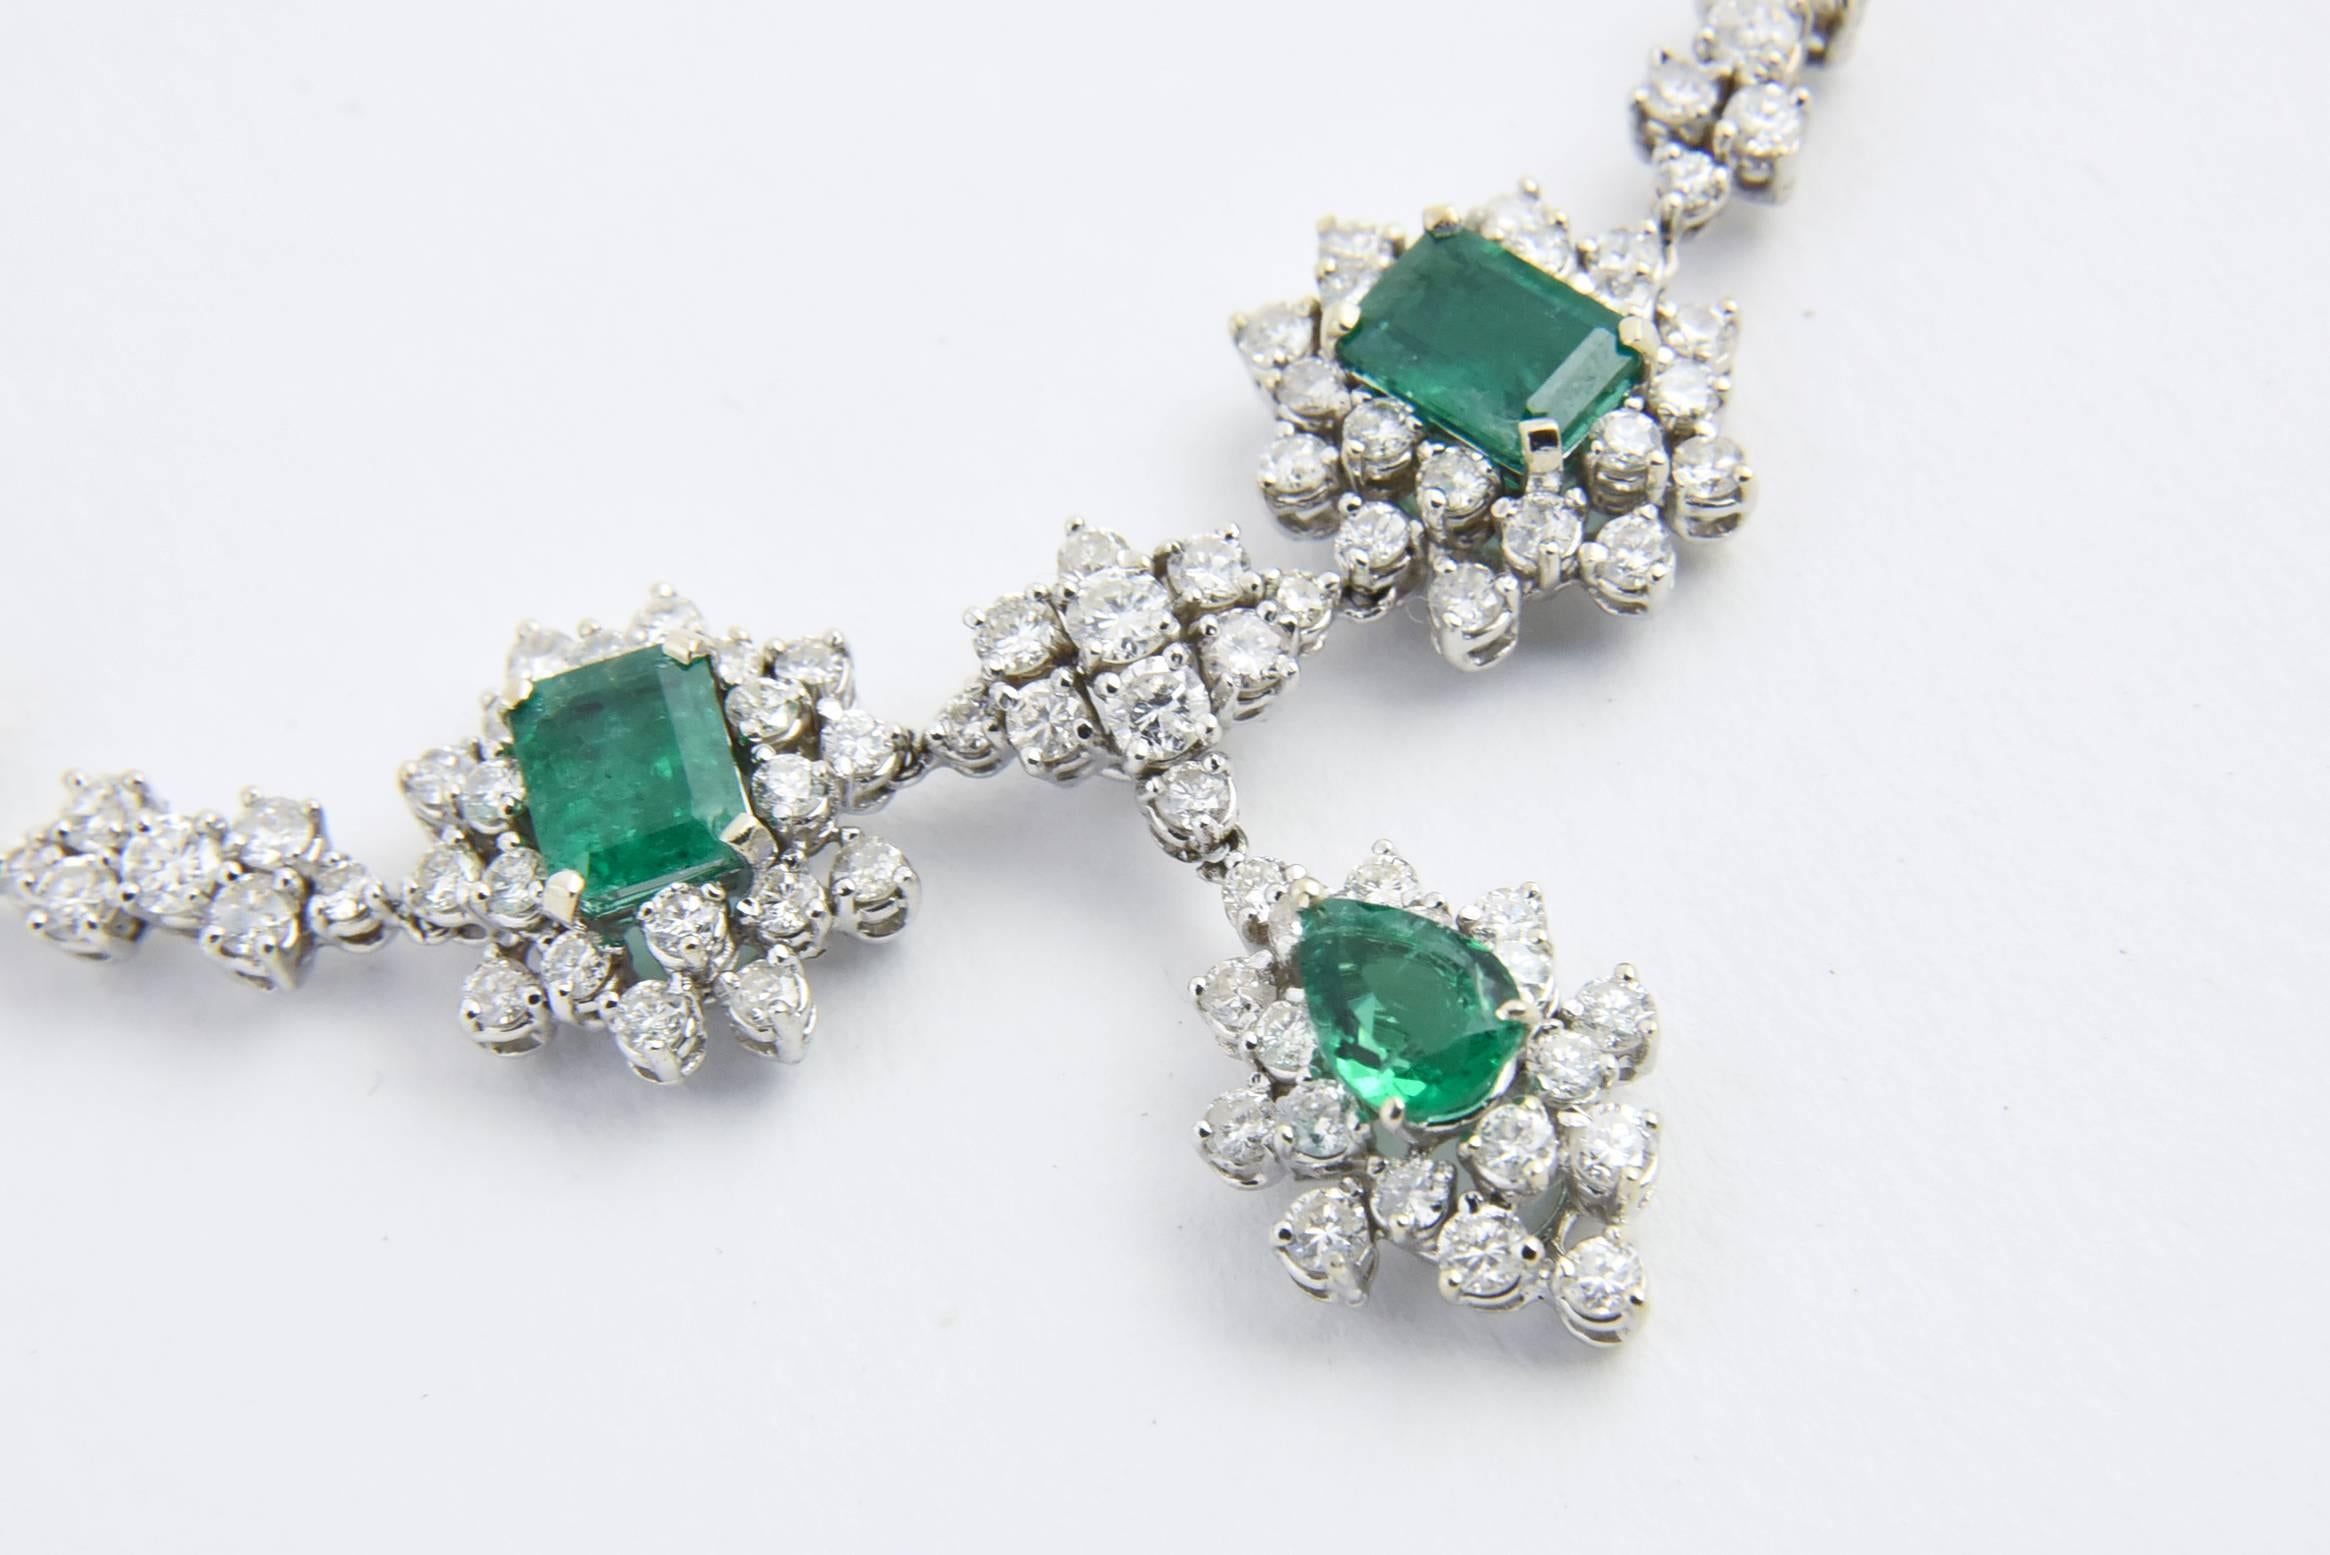 1950s jewelry styles